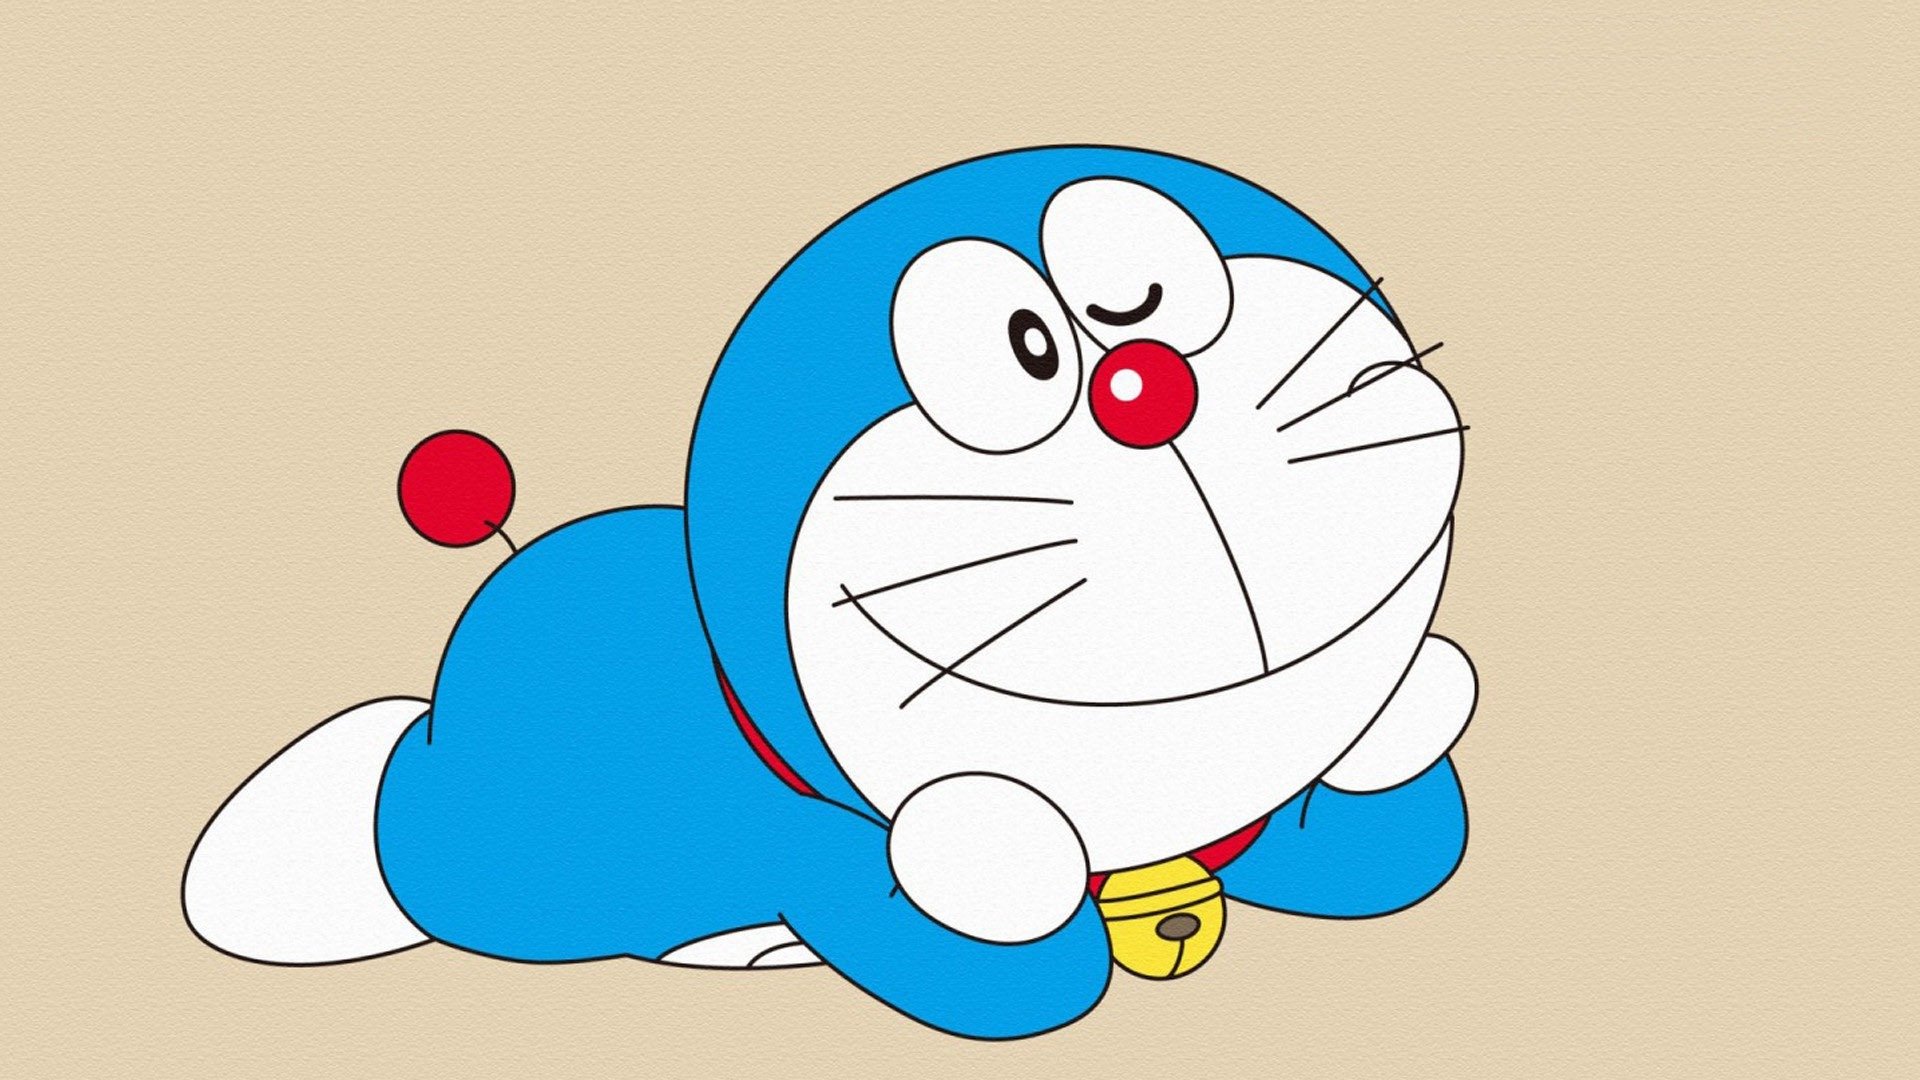 Best Doraemon Cartoon Wallpapers • TrumpWallpapers